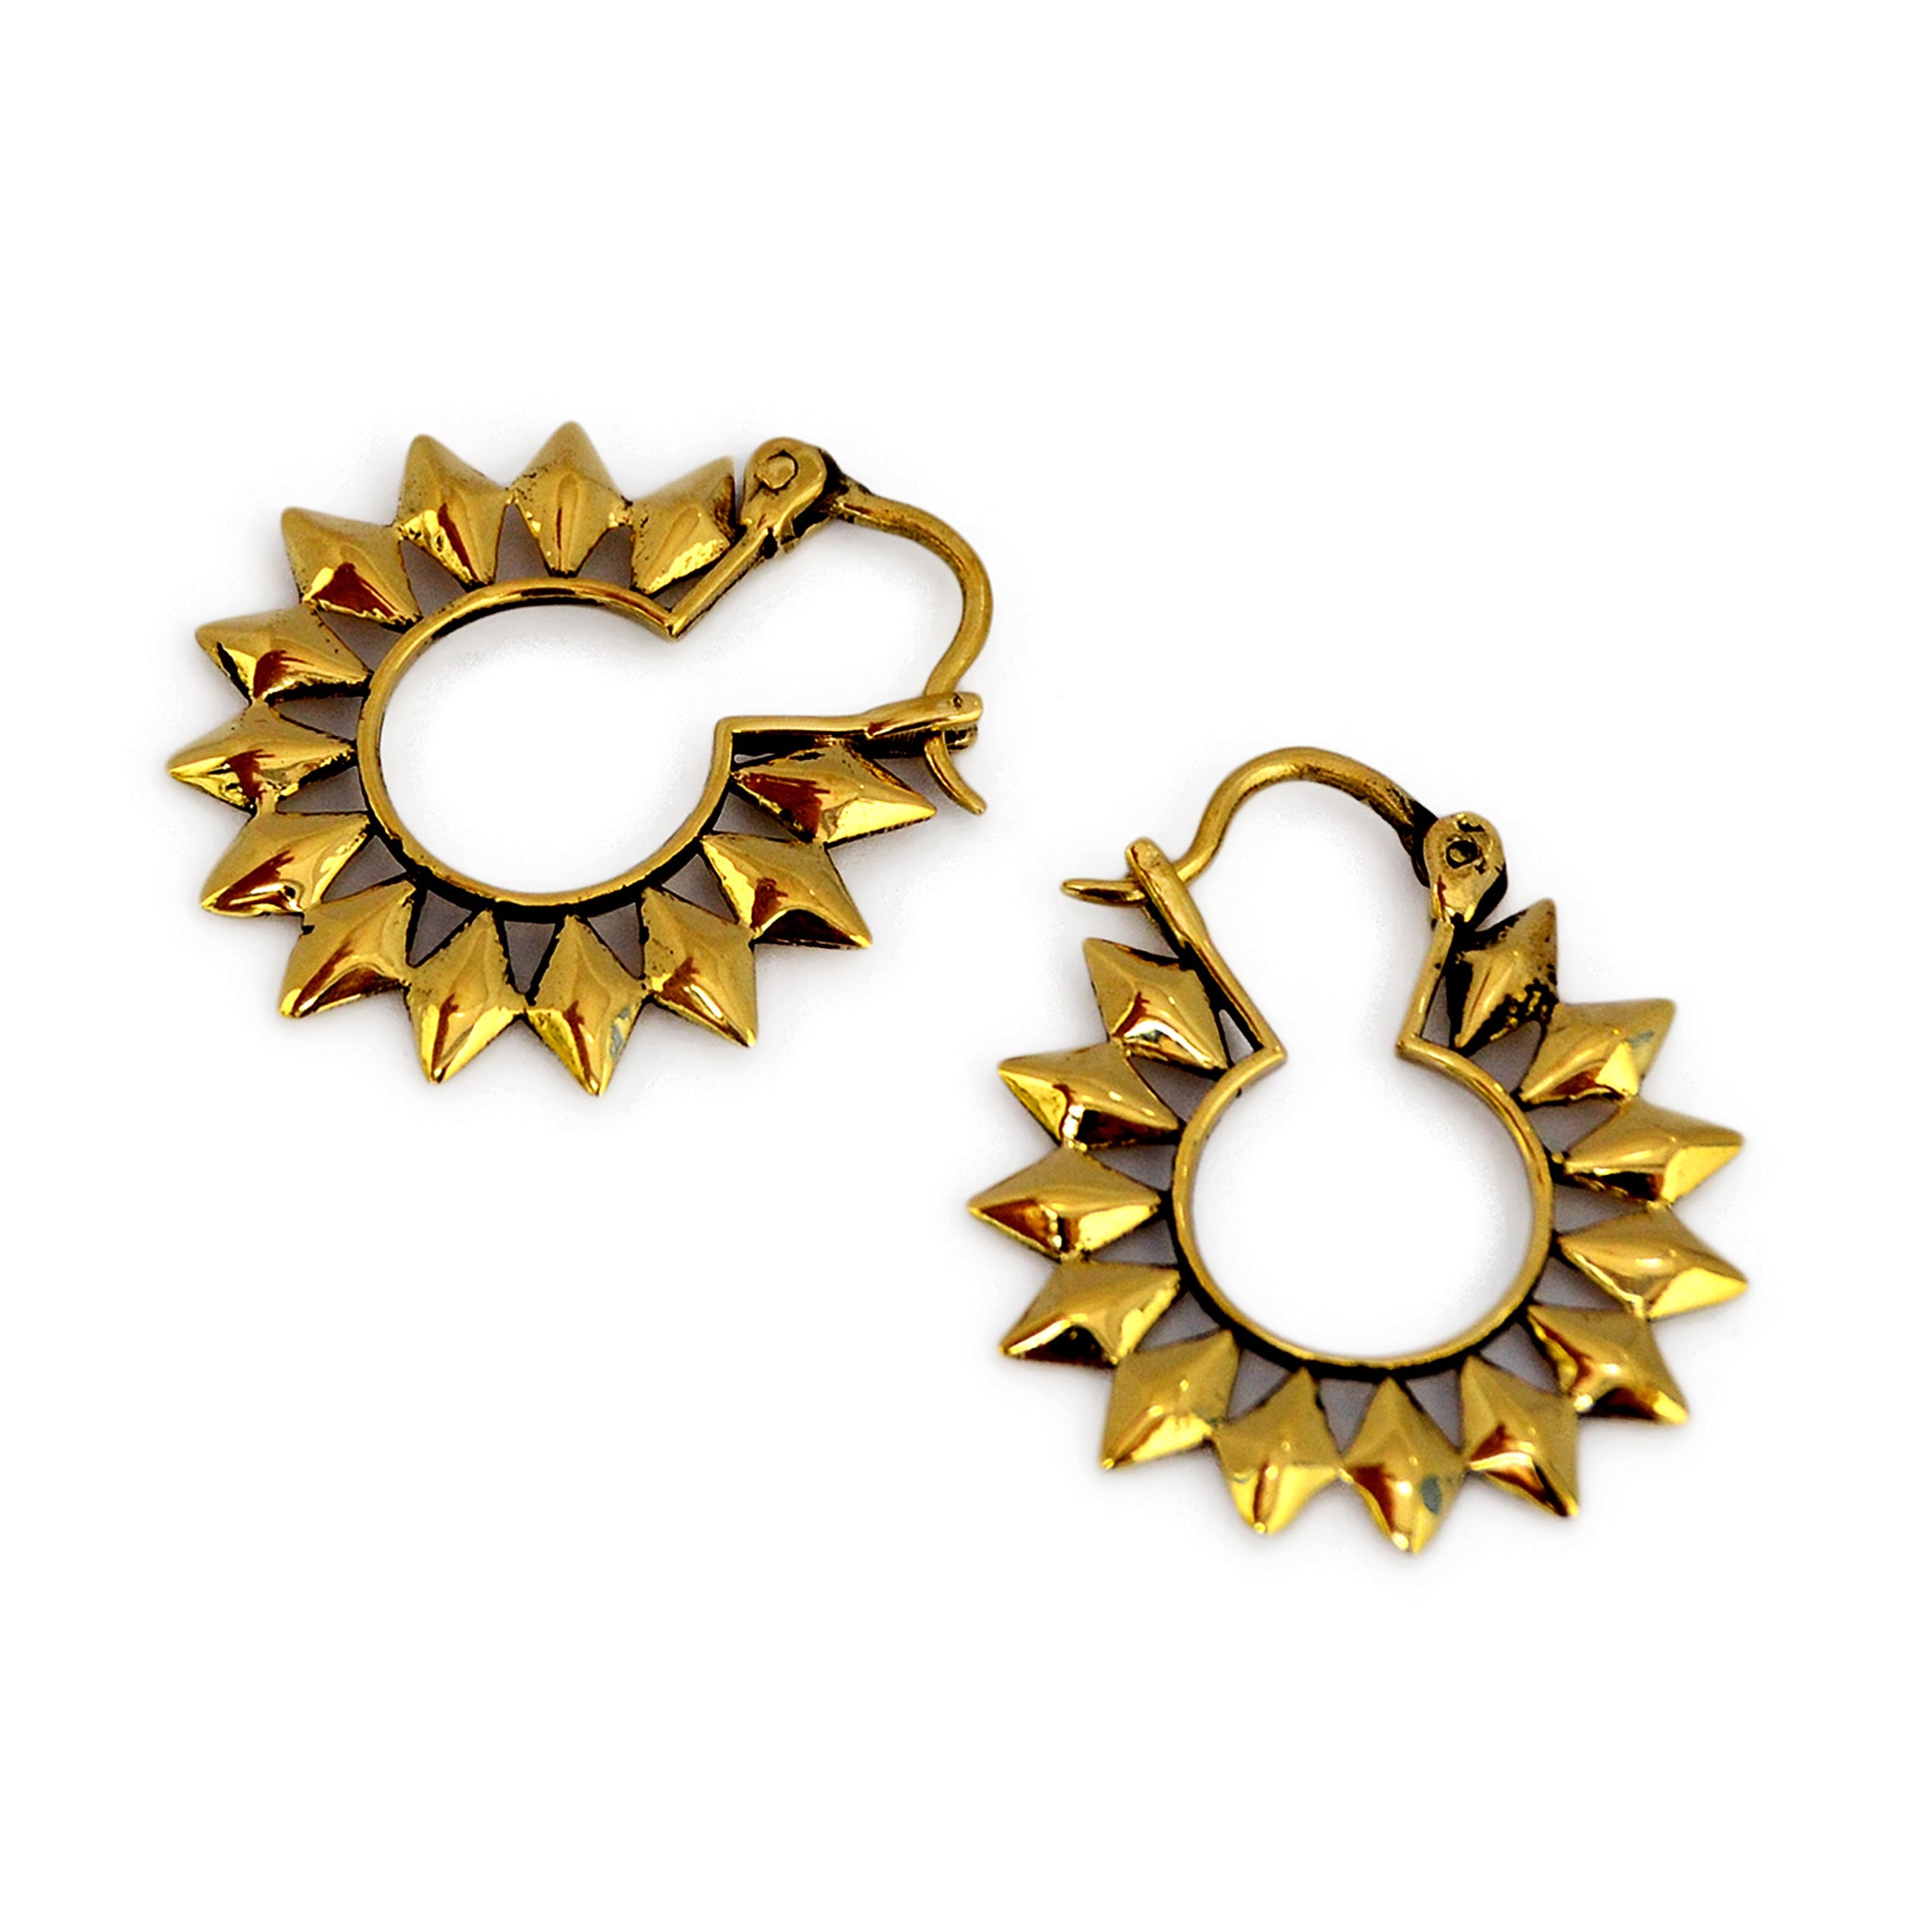 Small golden sun hoop earrings on white background